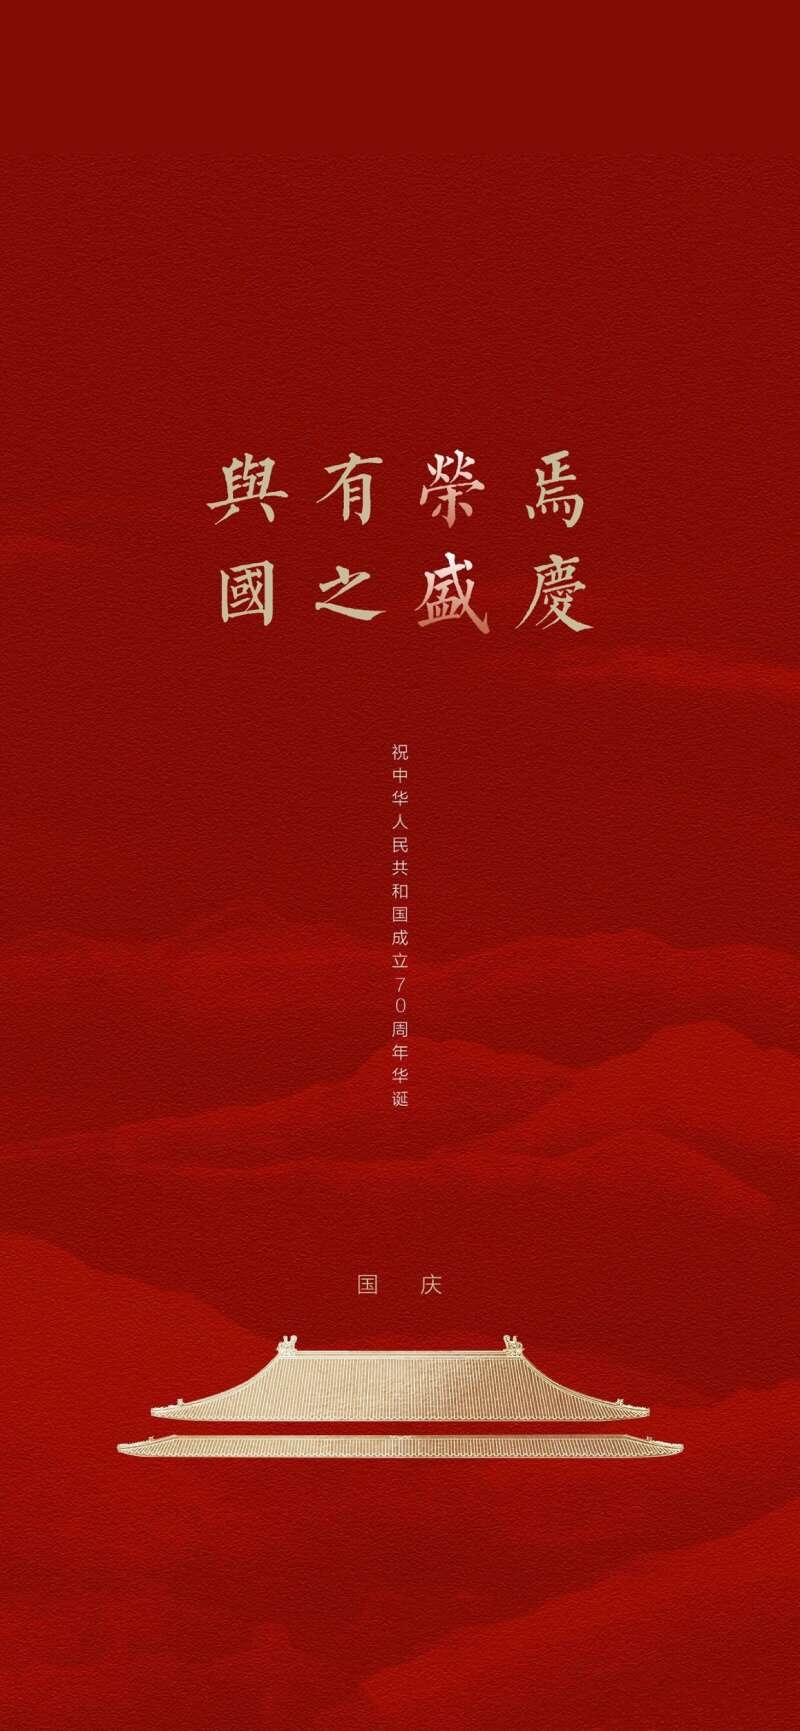 祝中华人民共和国成立七十周年华 手机壁纸 唯美其他手机壁纸 我要个性网